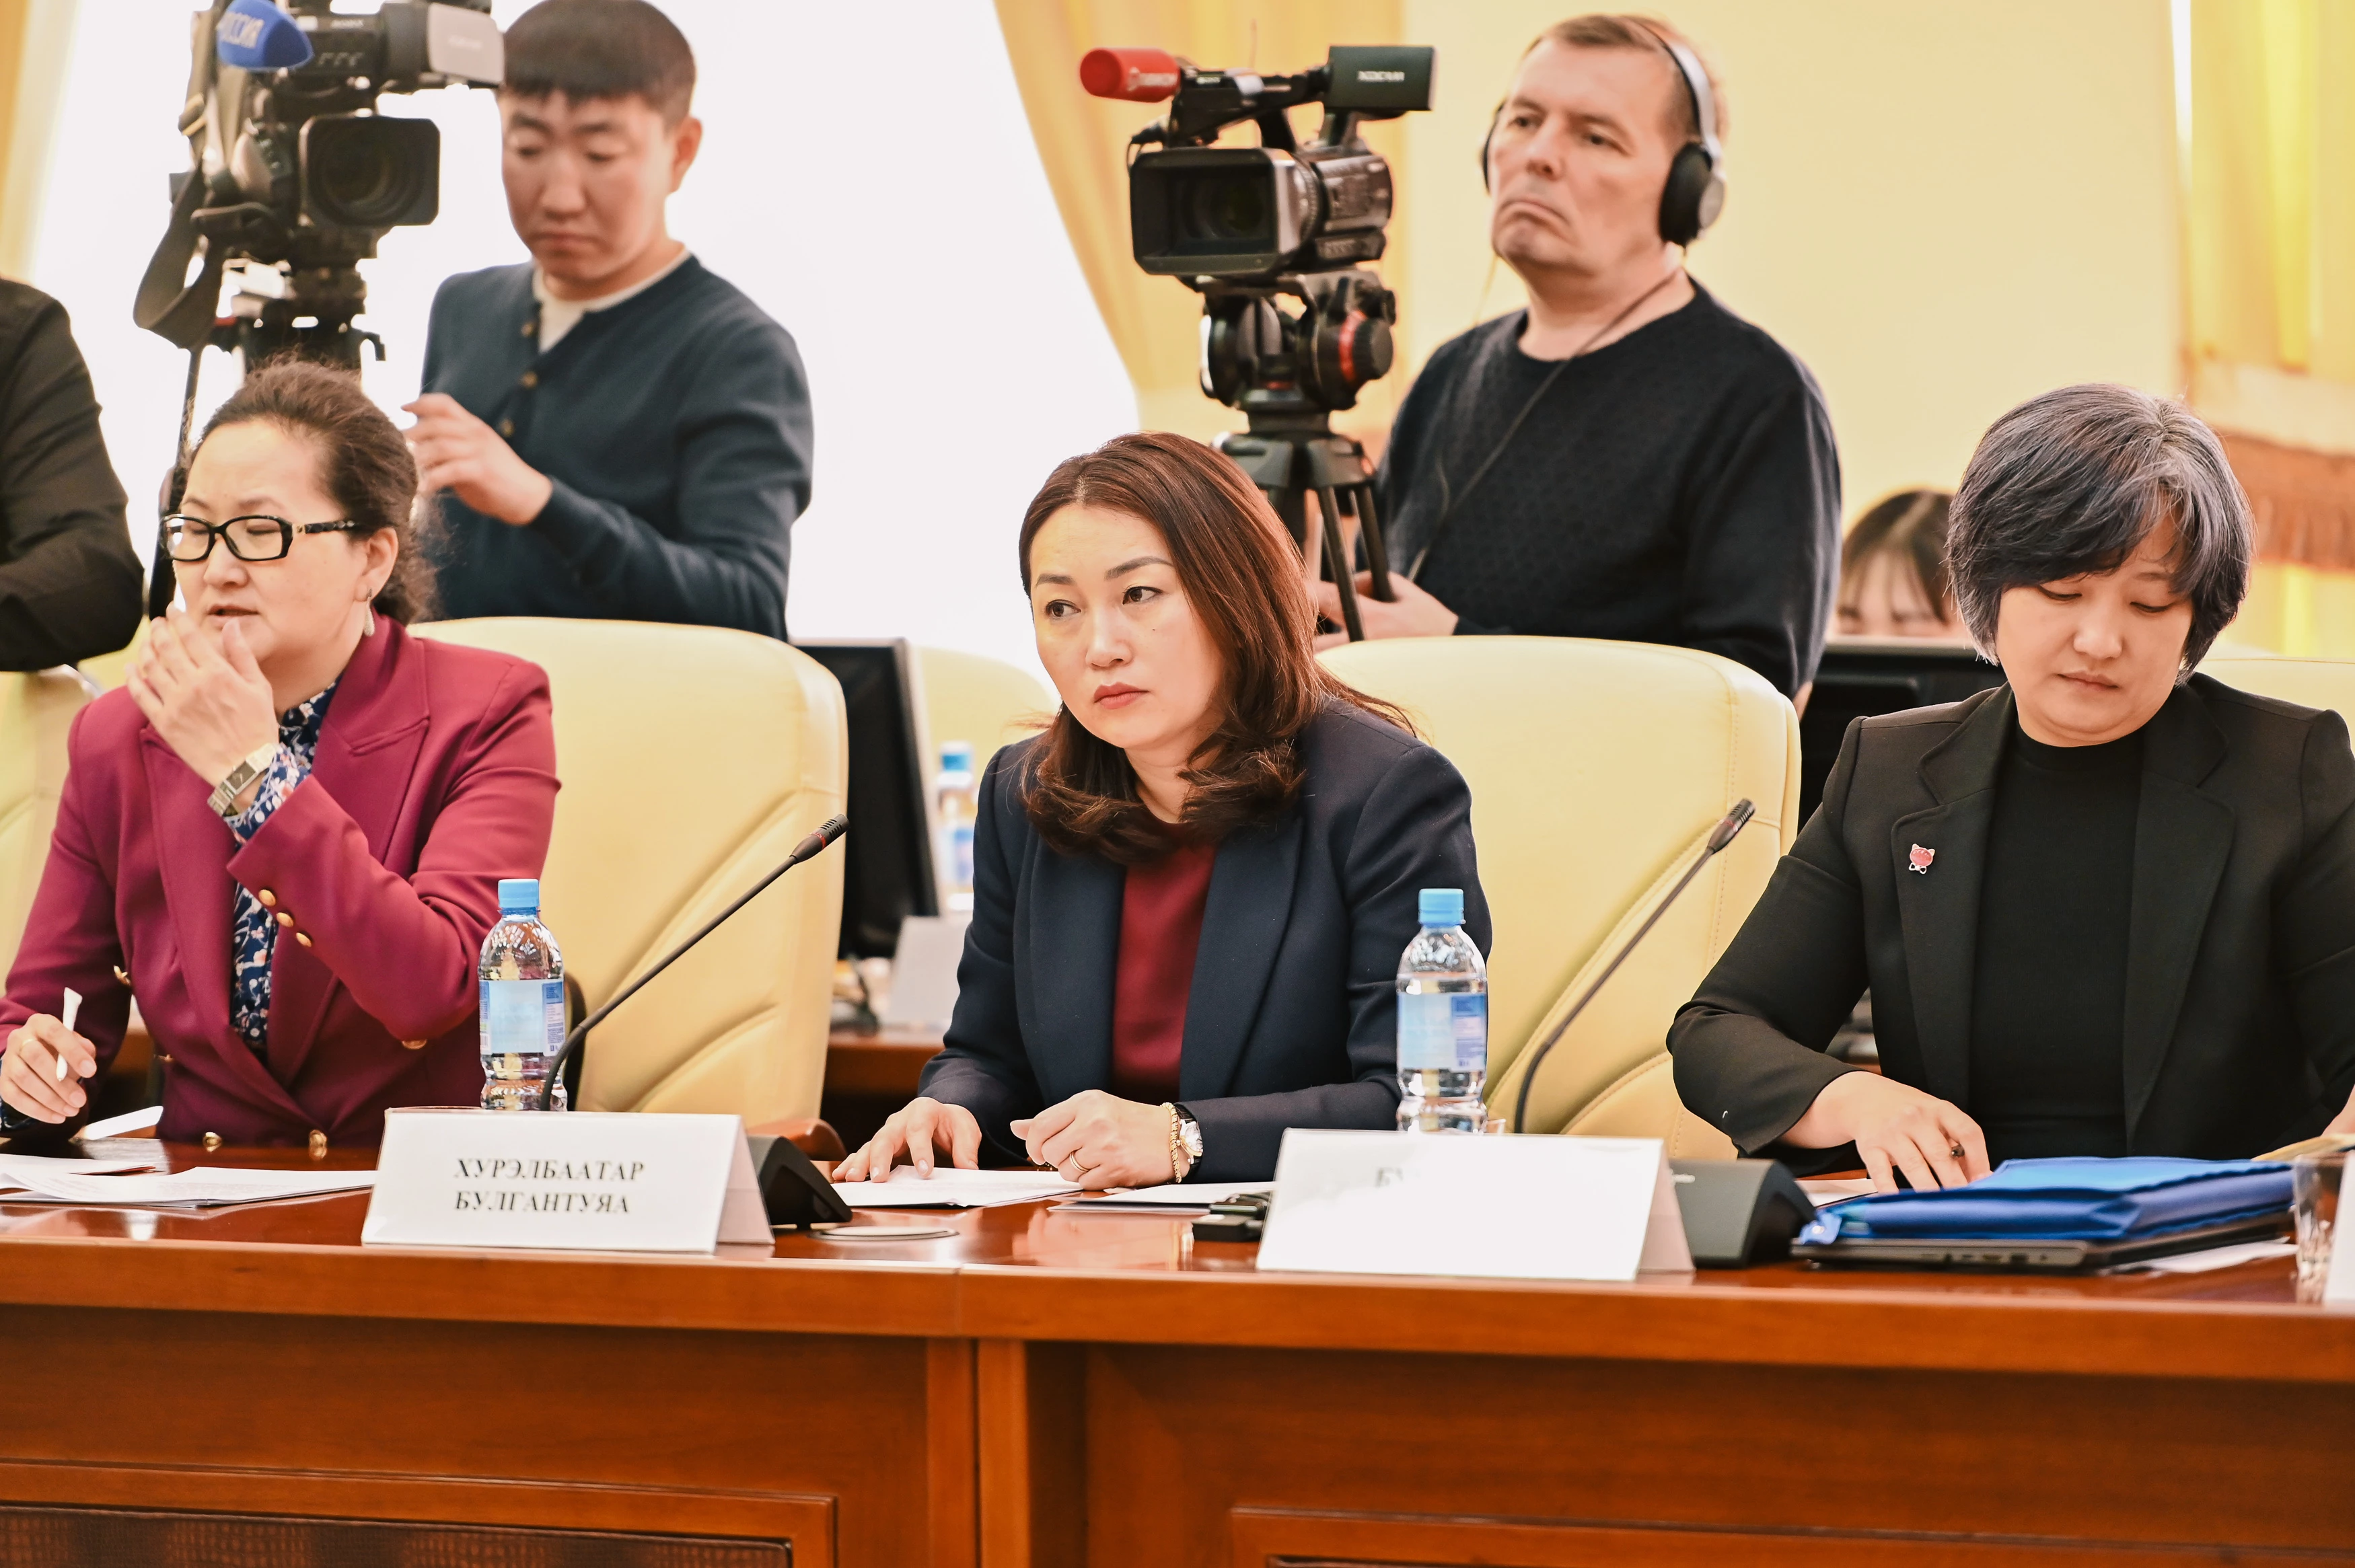 Развитие пунктов пропуска на российско-монгольском участке границы обсудили в ходе заседания Подкомиссии по региональному и приграничному сотрудничеству Российско-Монгольской Межправительственной комиссии